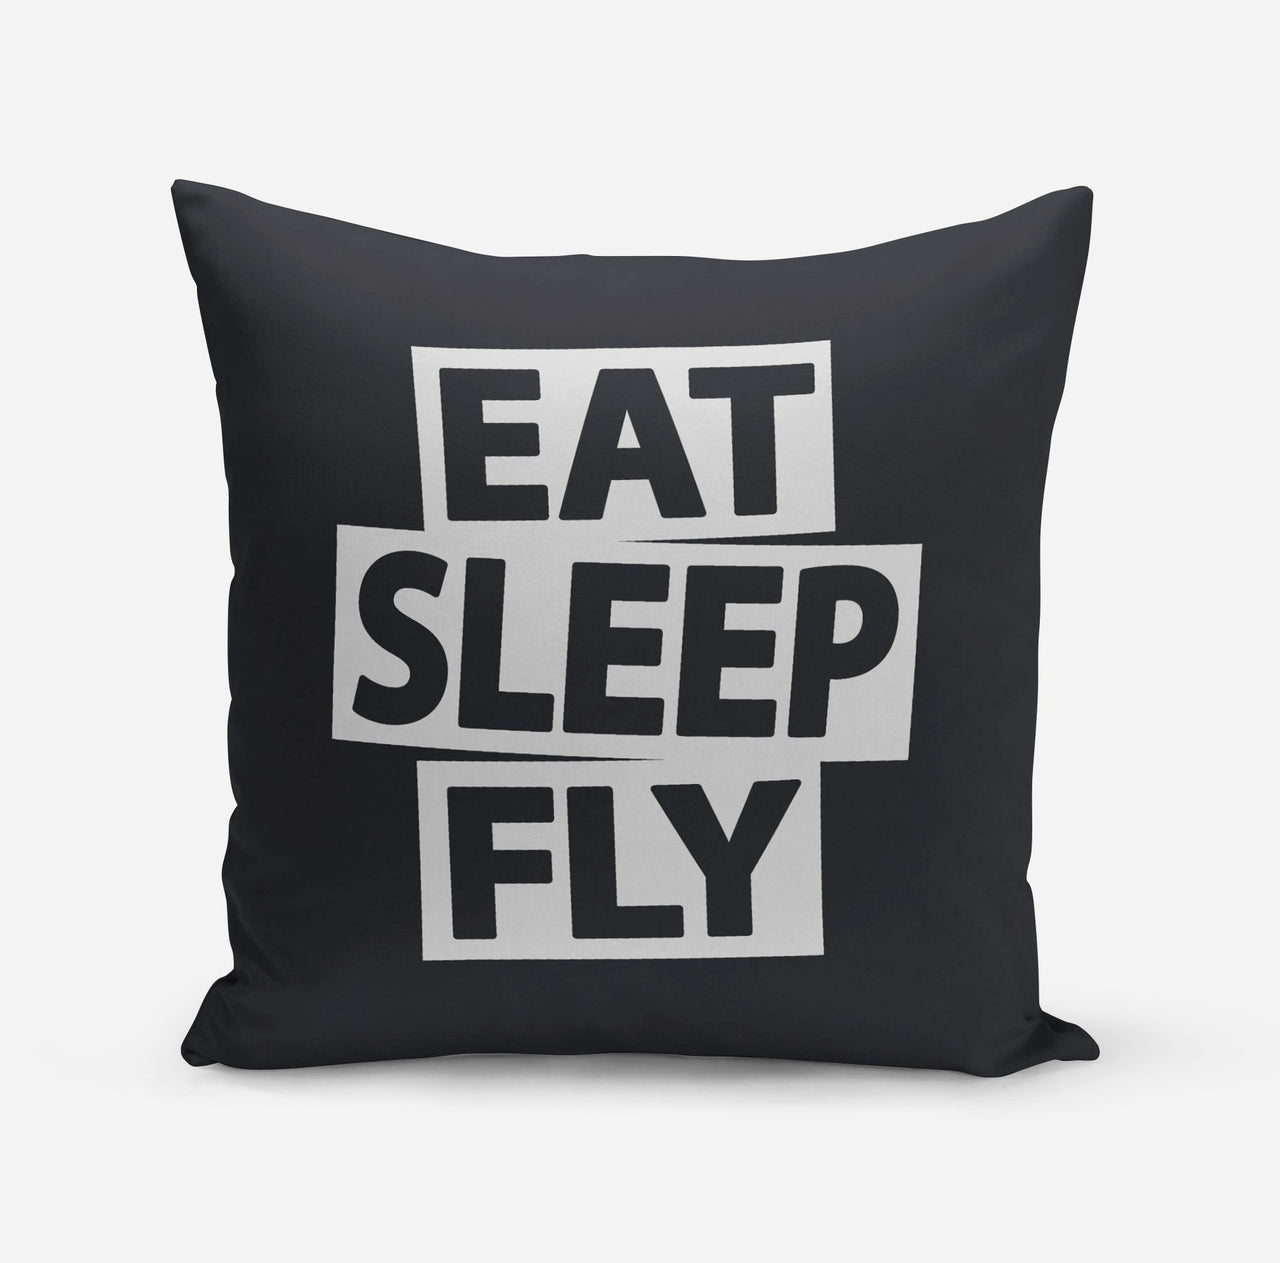 Eat Sleep Fly Pillows Pilot Eyes Store Black 55x55cm 